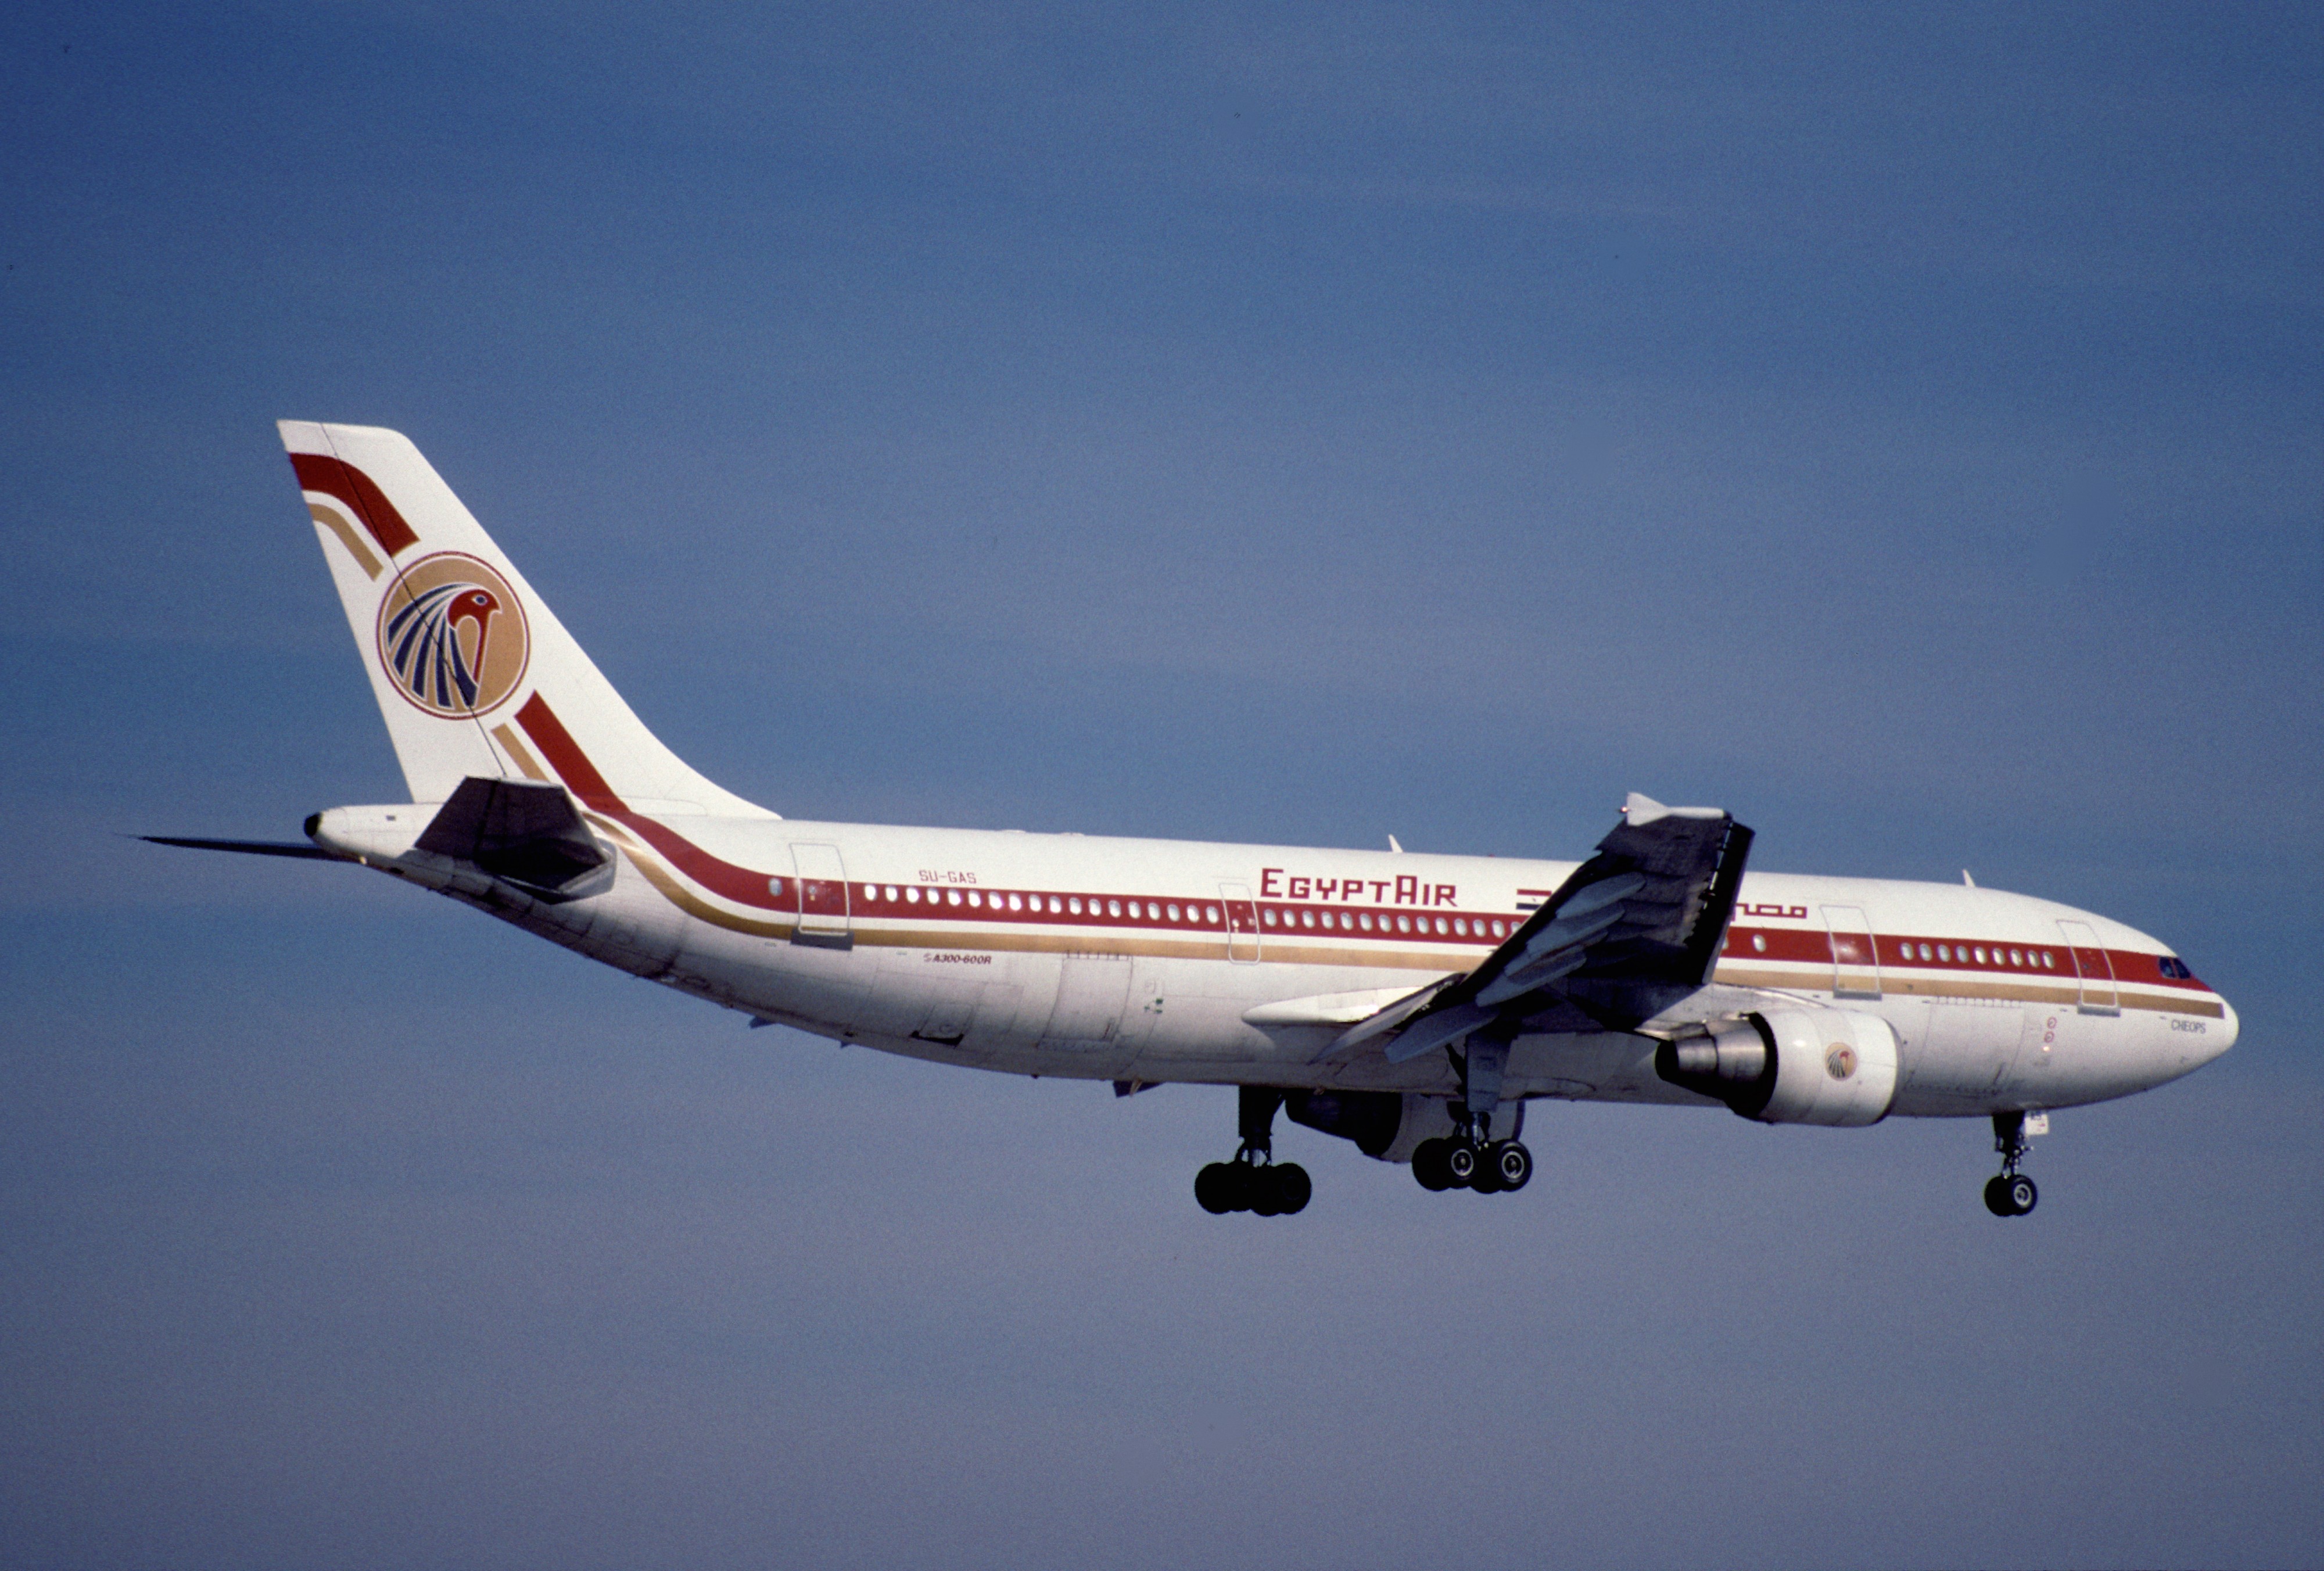 52ch - Egypt Air Airbus A300-622R; SU-GAS@ZRH;27.02.1999 (5144021983)